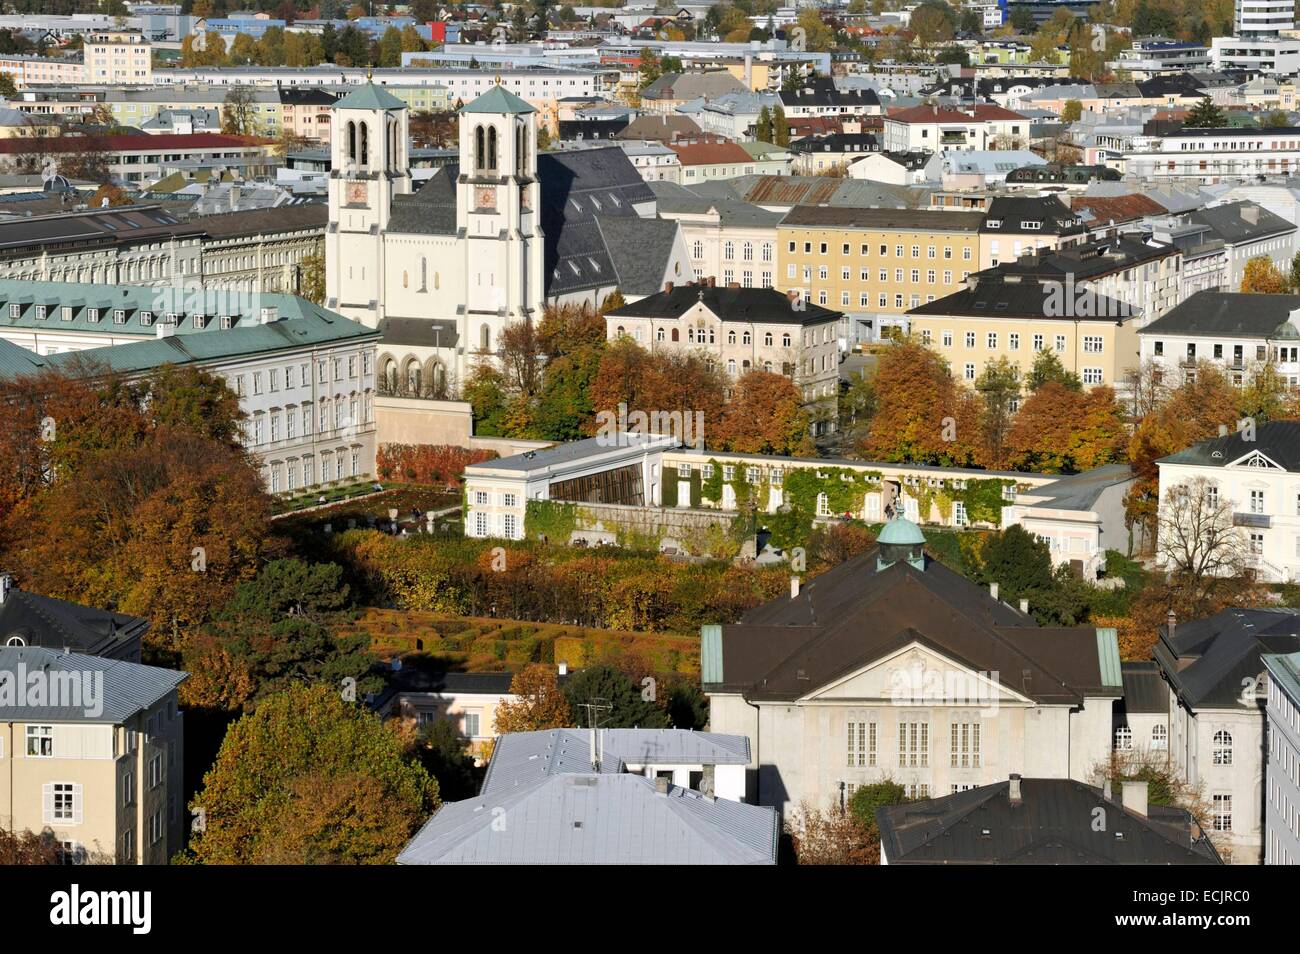 Autriche, Salzbourg, le centre historique classé au Patrimoine Mondial de l'UNESCO, le château et les jardins du château Mirabell, datant du 17e siècle Banque D'Images